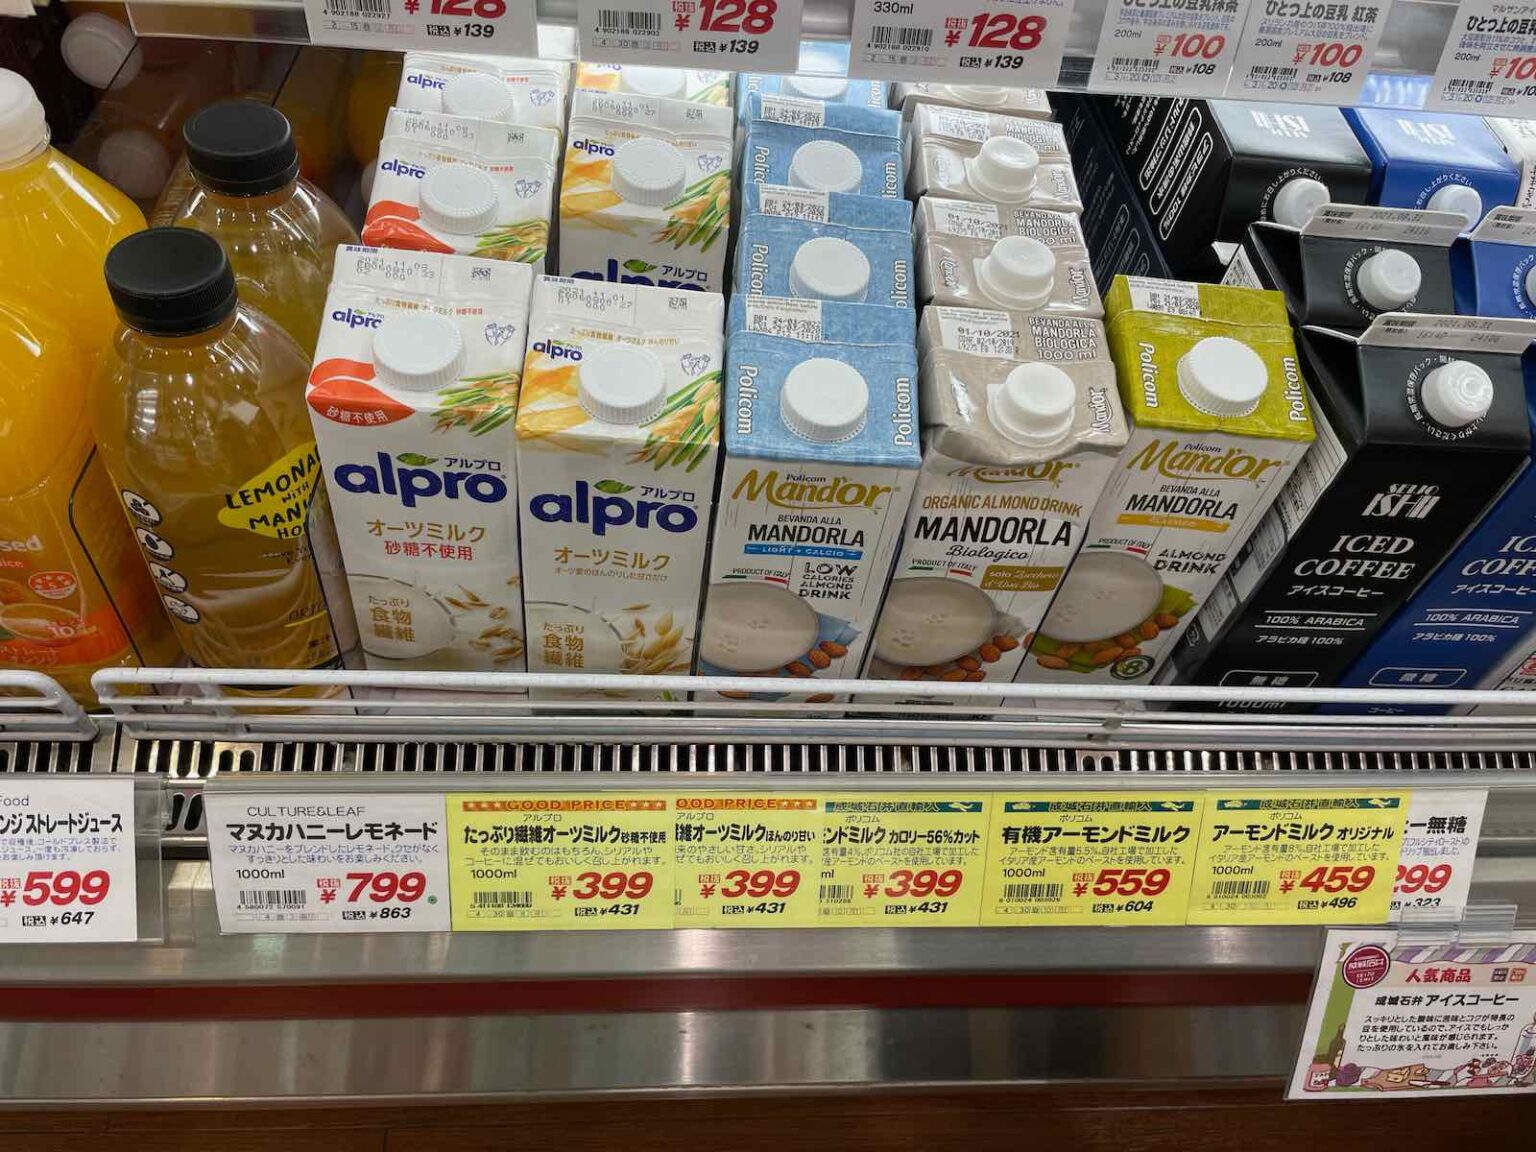 マイナーフィギュアズ 有機バリスタ オーツミルク やALPROのオーツミルク はネスプレッソのエアロチーノで泡立つかを検証してみた | 港区ブログ